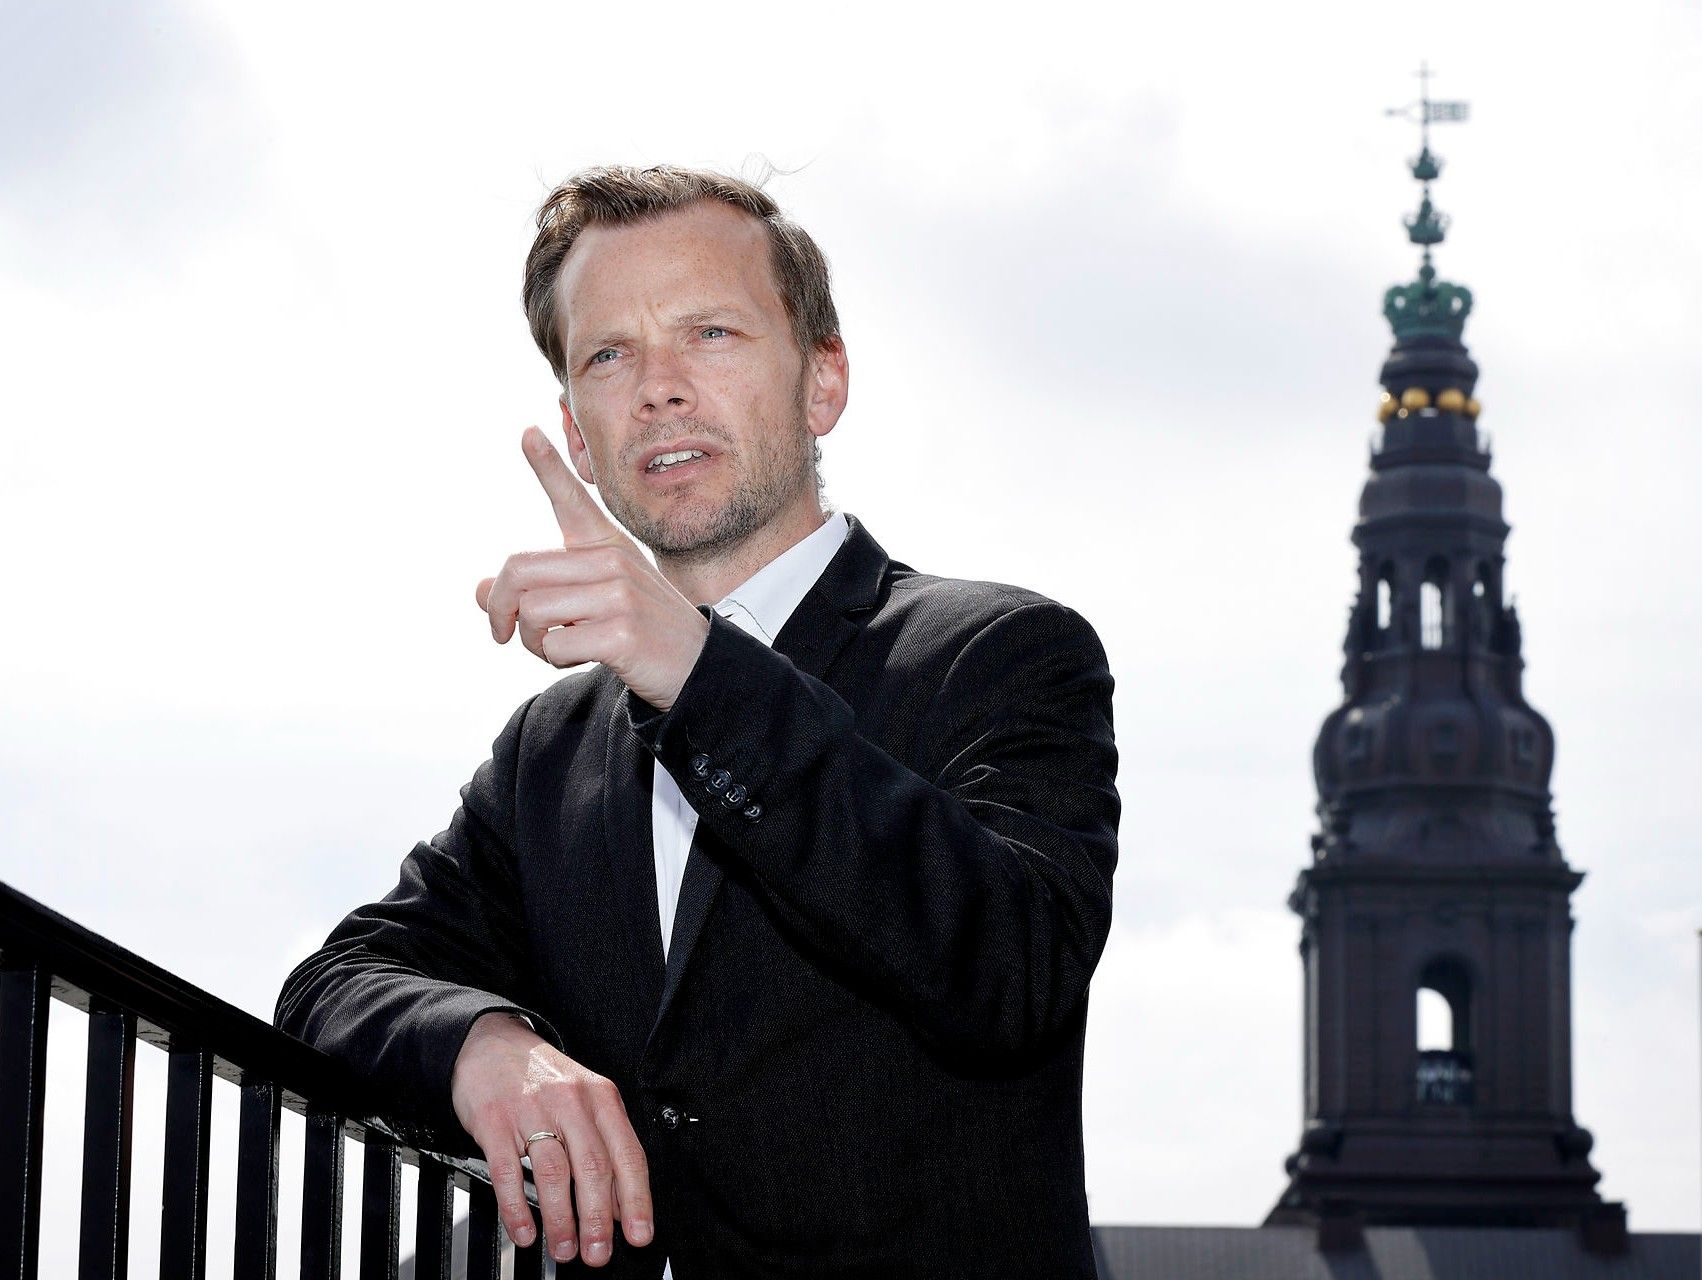 Beskæftigelsesminister Peter Hummelgaard er ikke glad for ja- eller nej-spørgsmål. Spørg bare Politiken, der kæmpede med at få et klart svar ud af ham. Foto: Jens Dresling